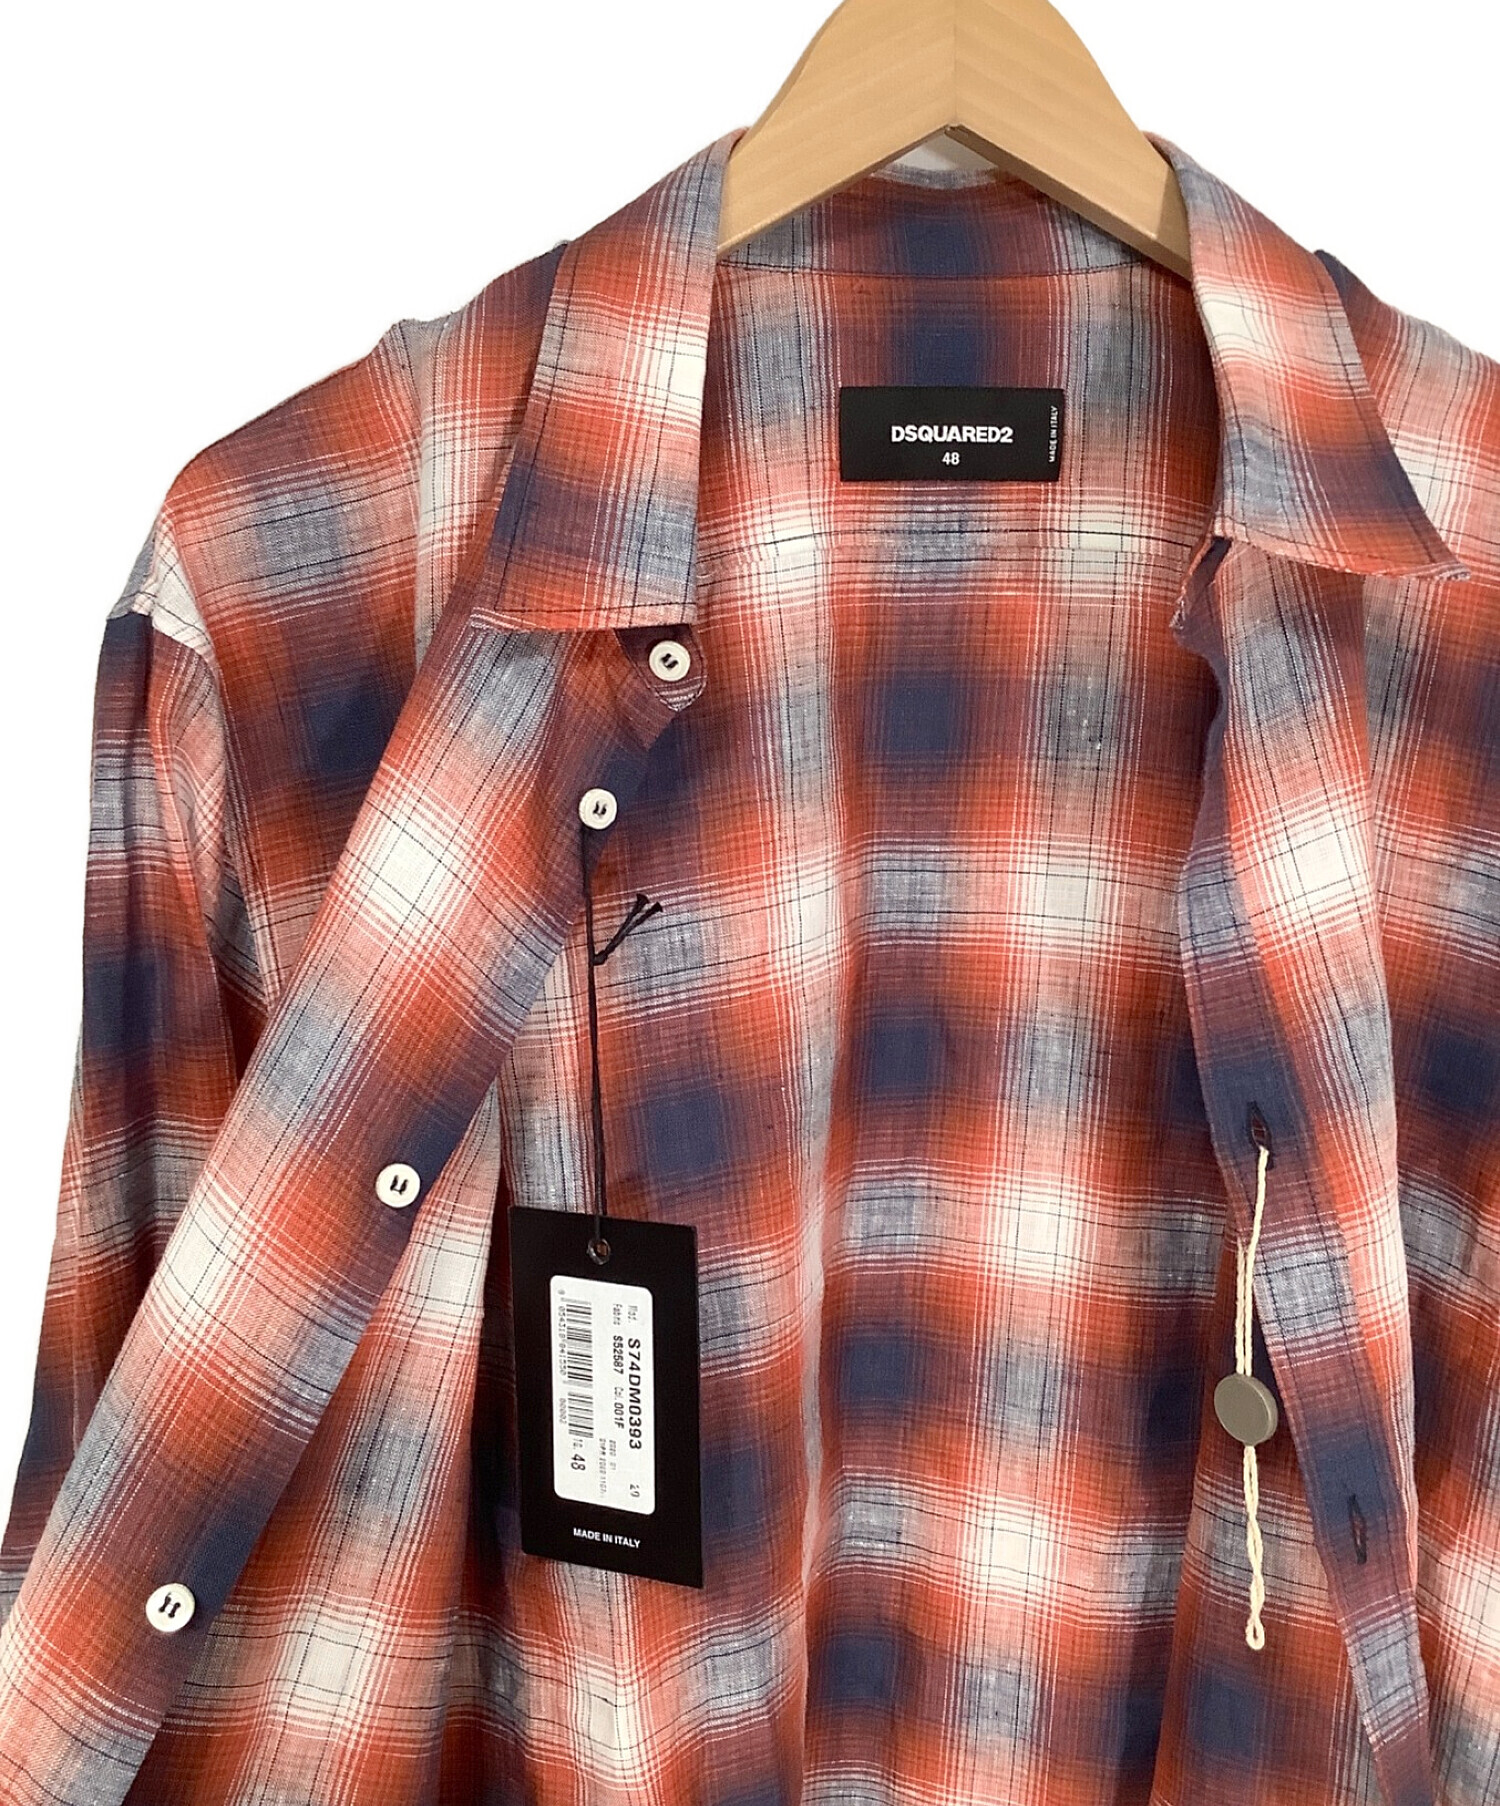 DSQUARED2 (ディースクエアード) リネンチェックシャツ レッド サイズ:48 未使用品